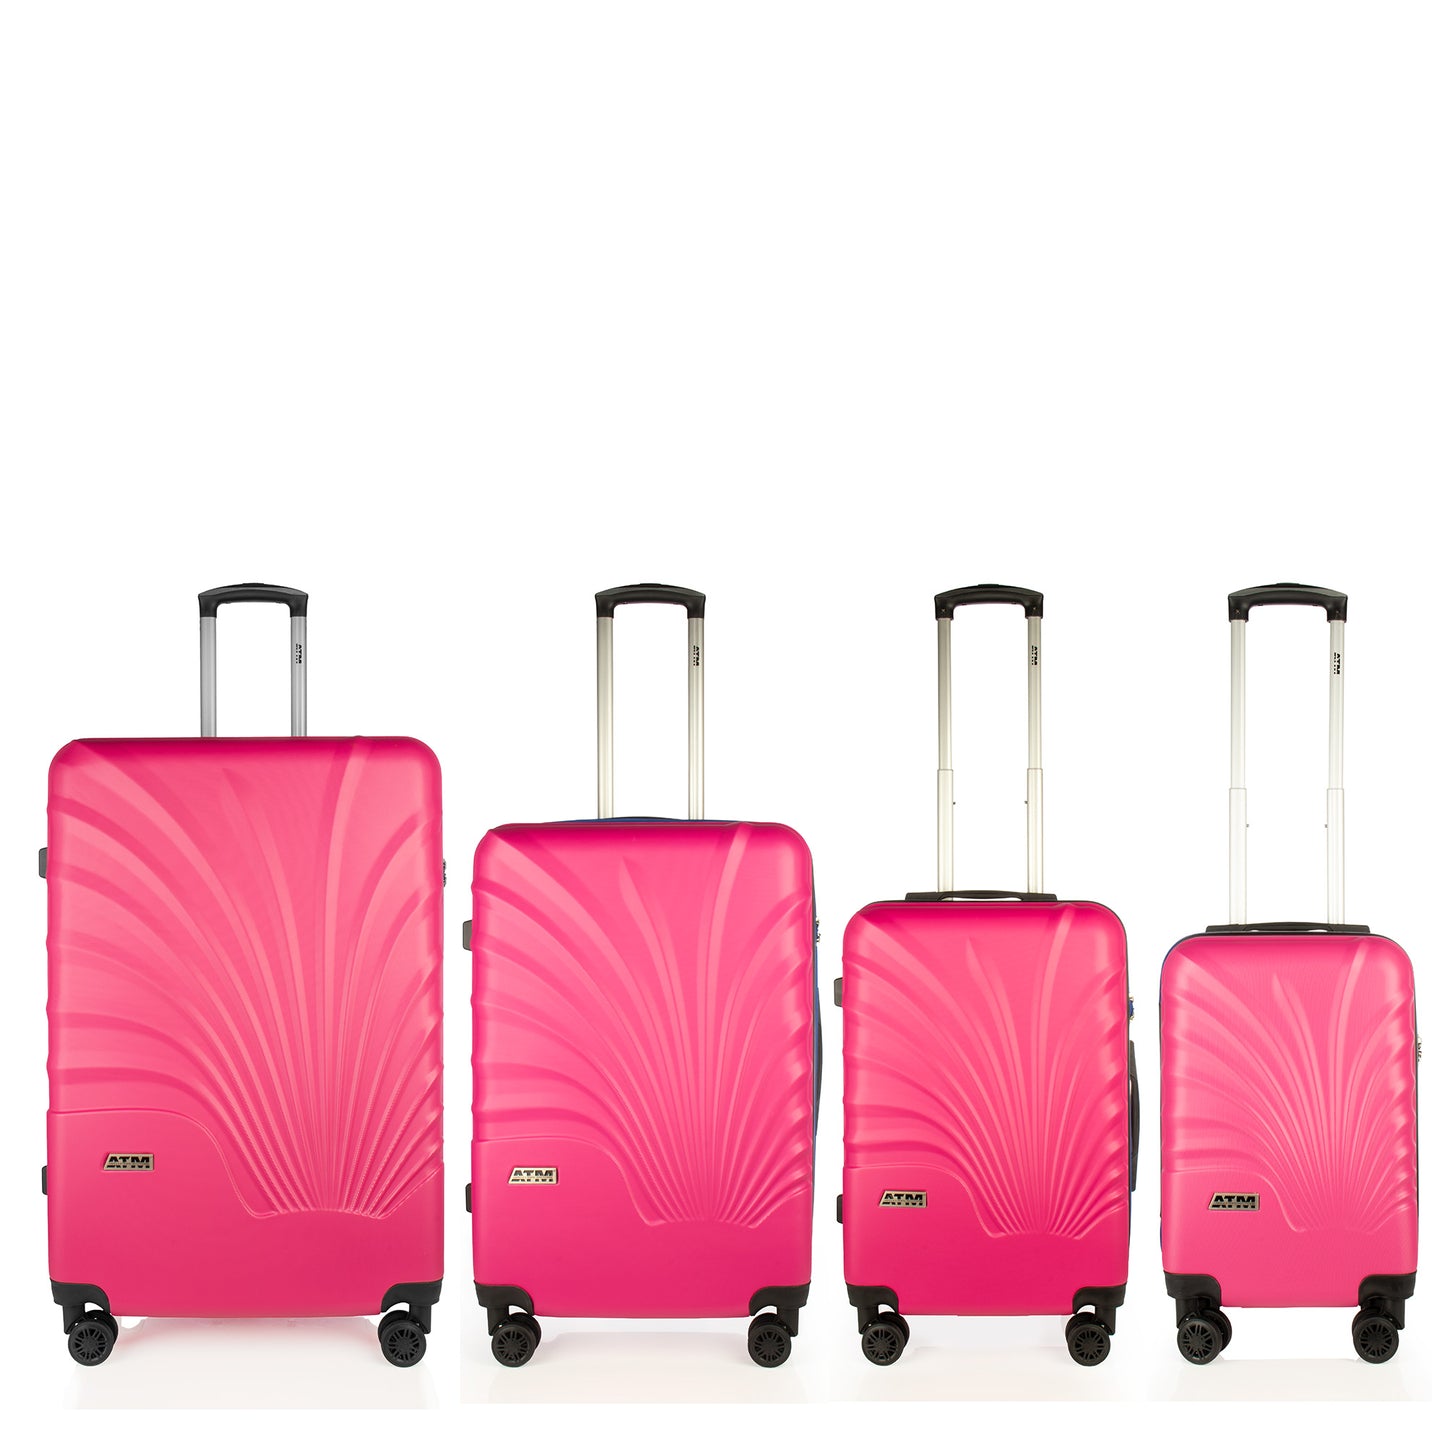 Opiniones recientes sobre las maletas American Travel: actualizaciones y comentarios